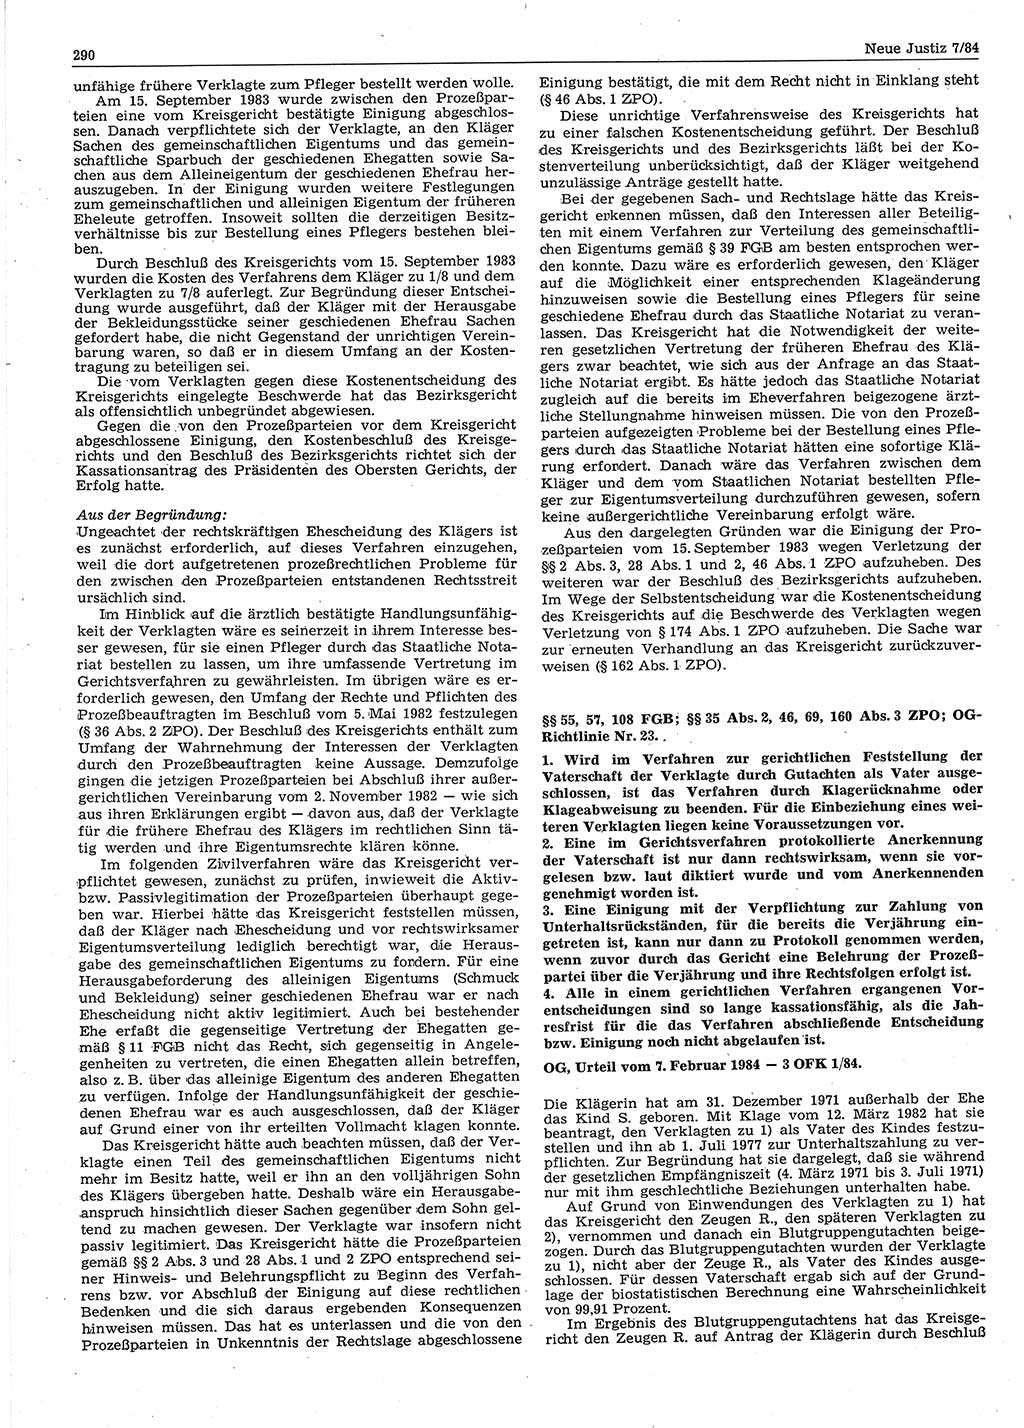 Neue Justiz (NJ), Zeitschrift für sozialistisches Recht und Gesetzlichkeit [Deutsche Demokratische Republik (DDR)], 38. Jahrgang 1984, Seite 290 (NJ DDR 1984, S. 290)